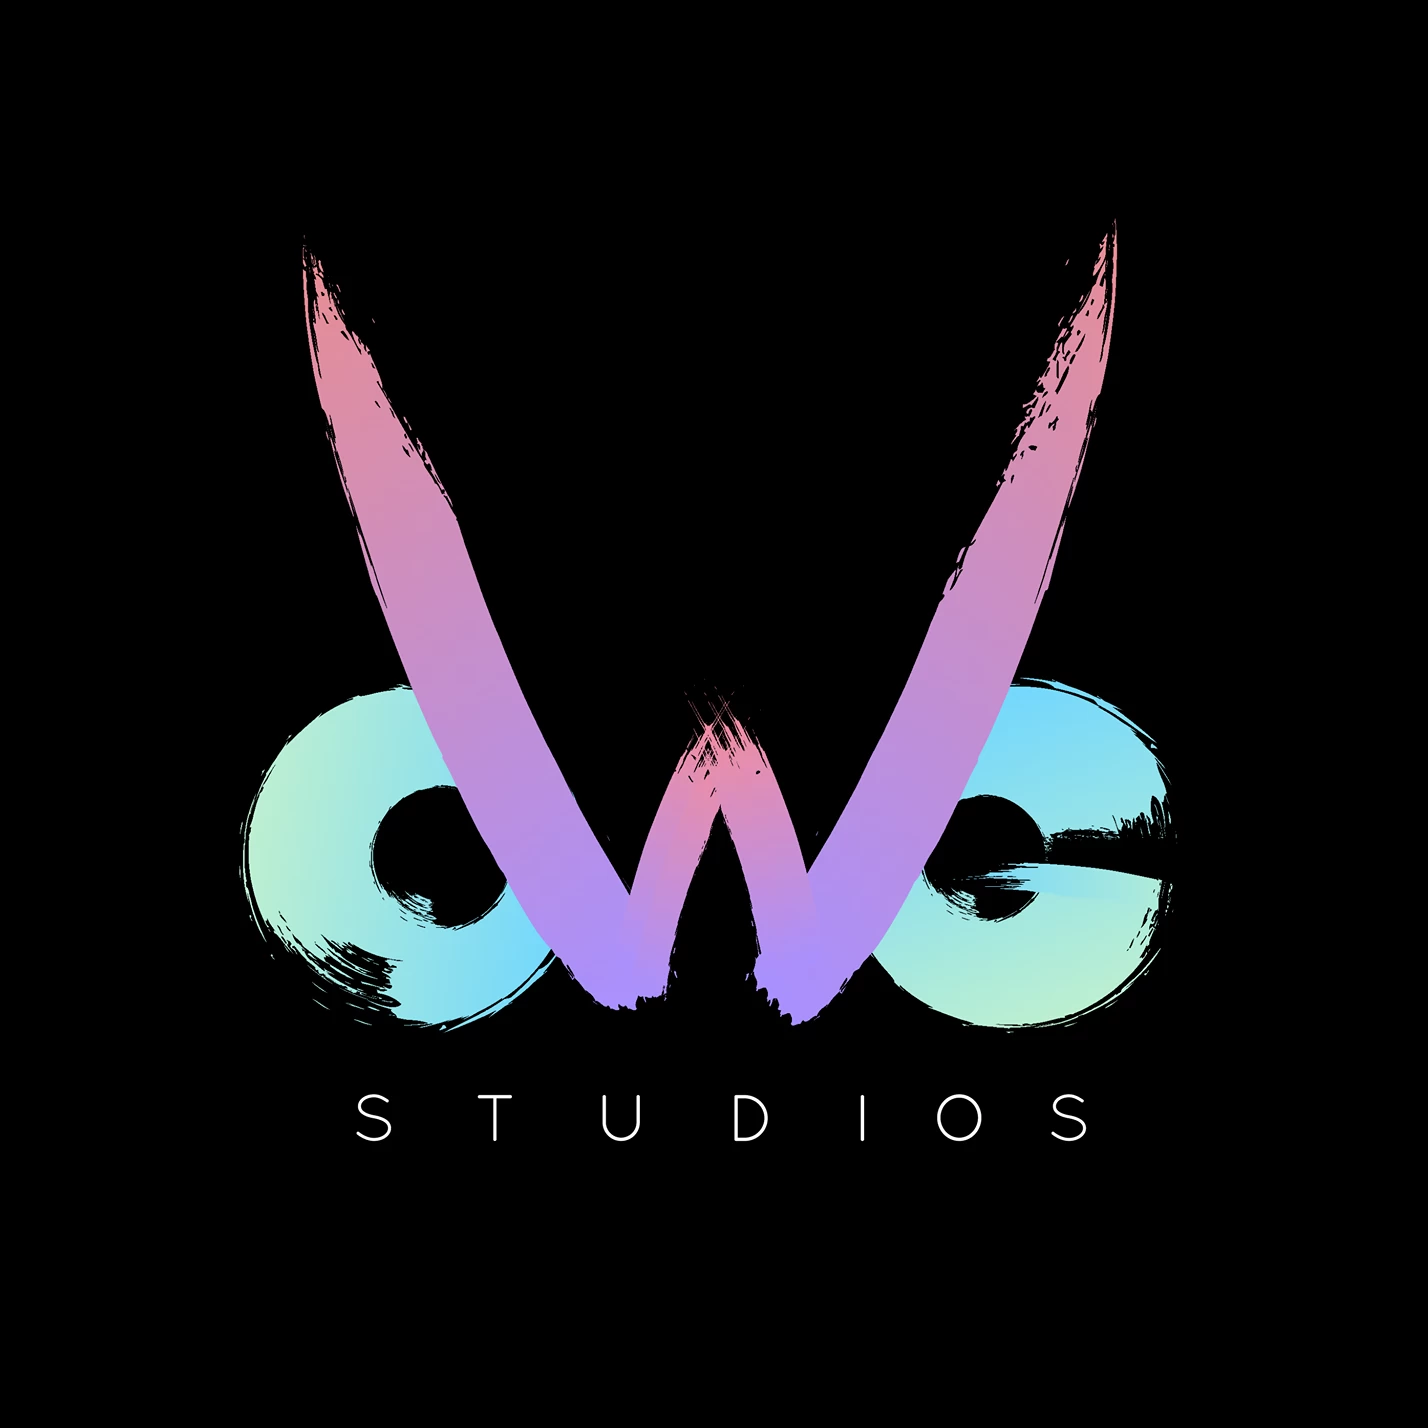 OWG Studios